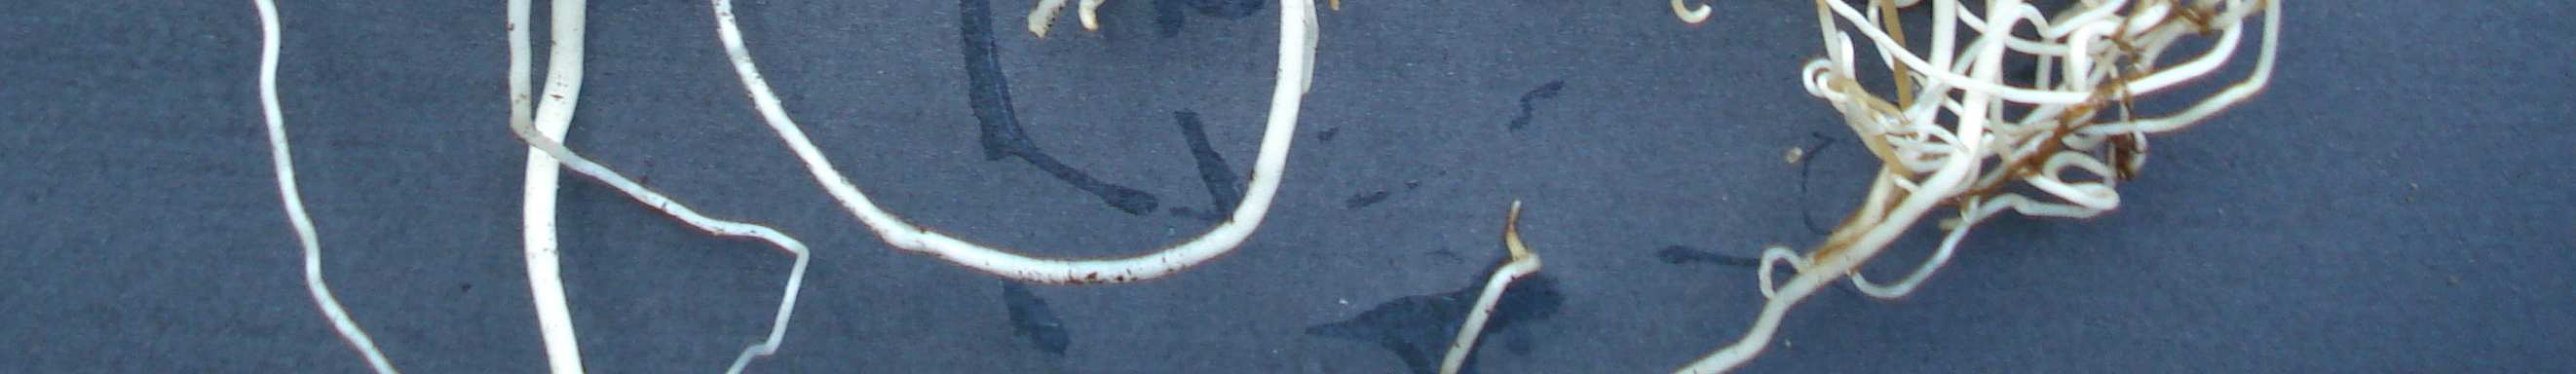 Soğan çapı 1.5 cm den büyük olan soğancıkların saksılara alındıktan 6 hafta sonraki durumları Şekil 4.